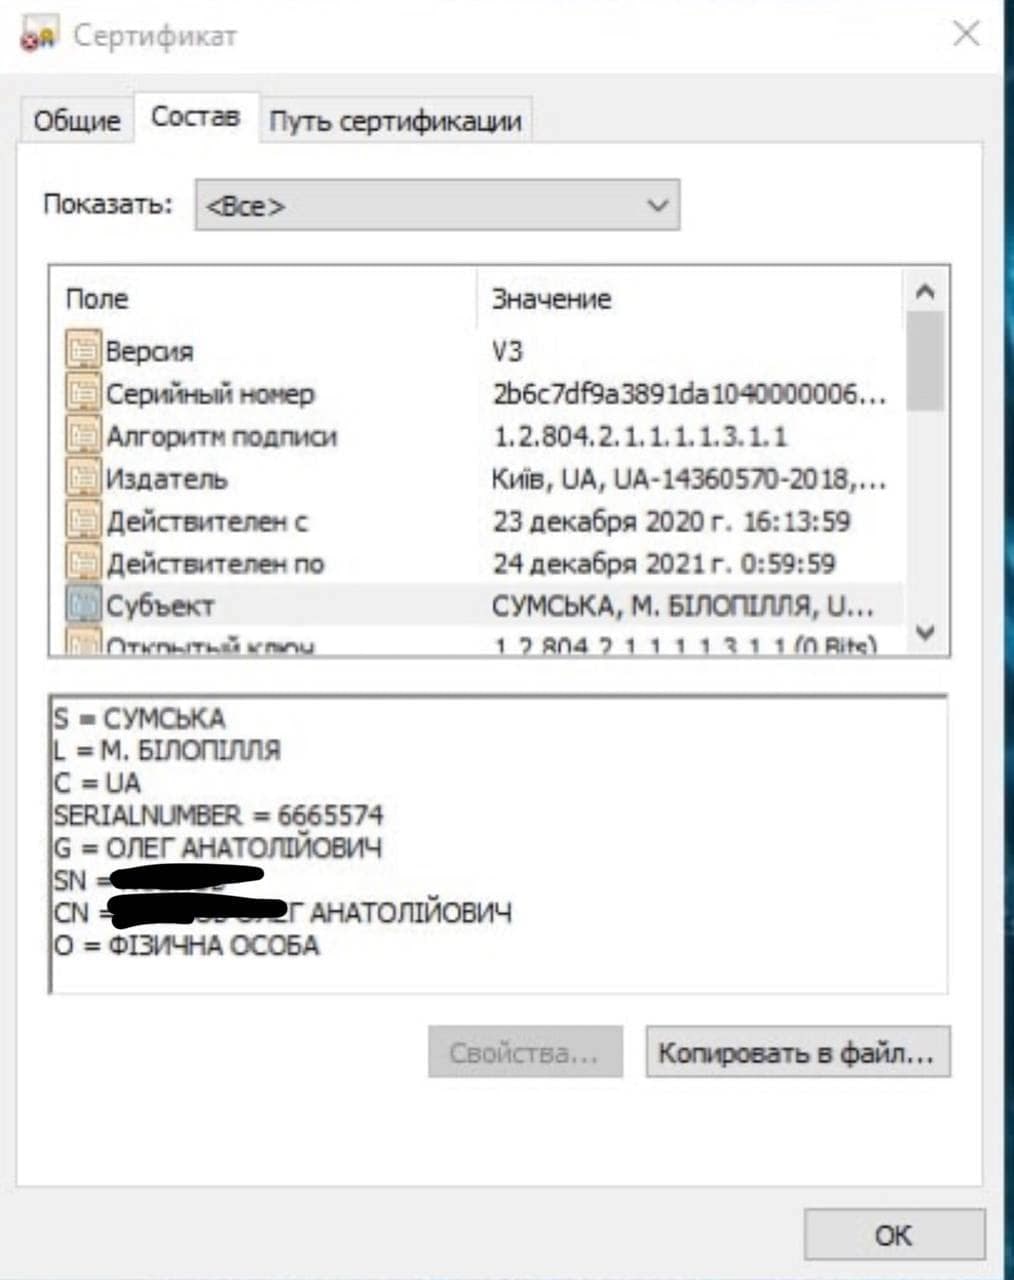 Слитые в сеть данные украинцев напоминают информацию из приложения "Дия". Фото